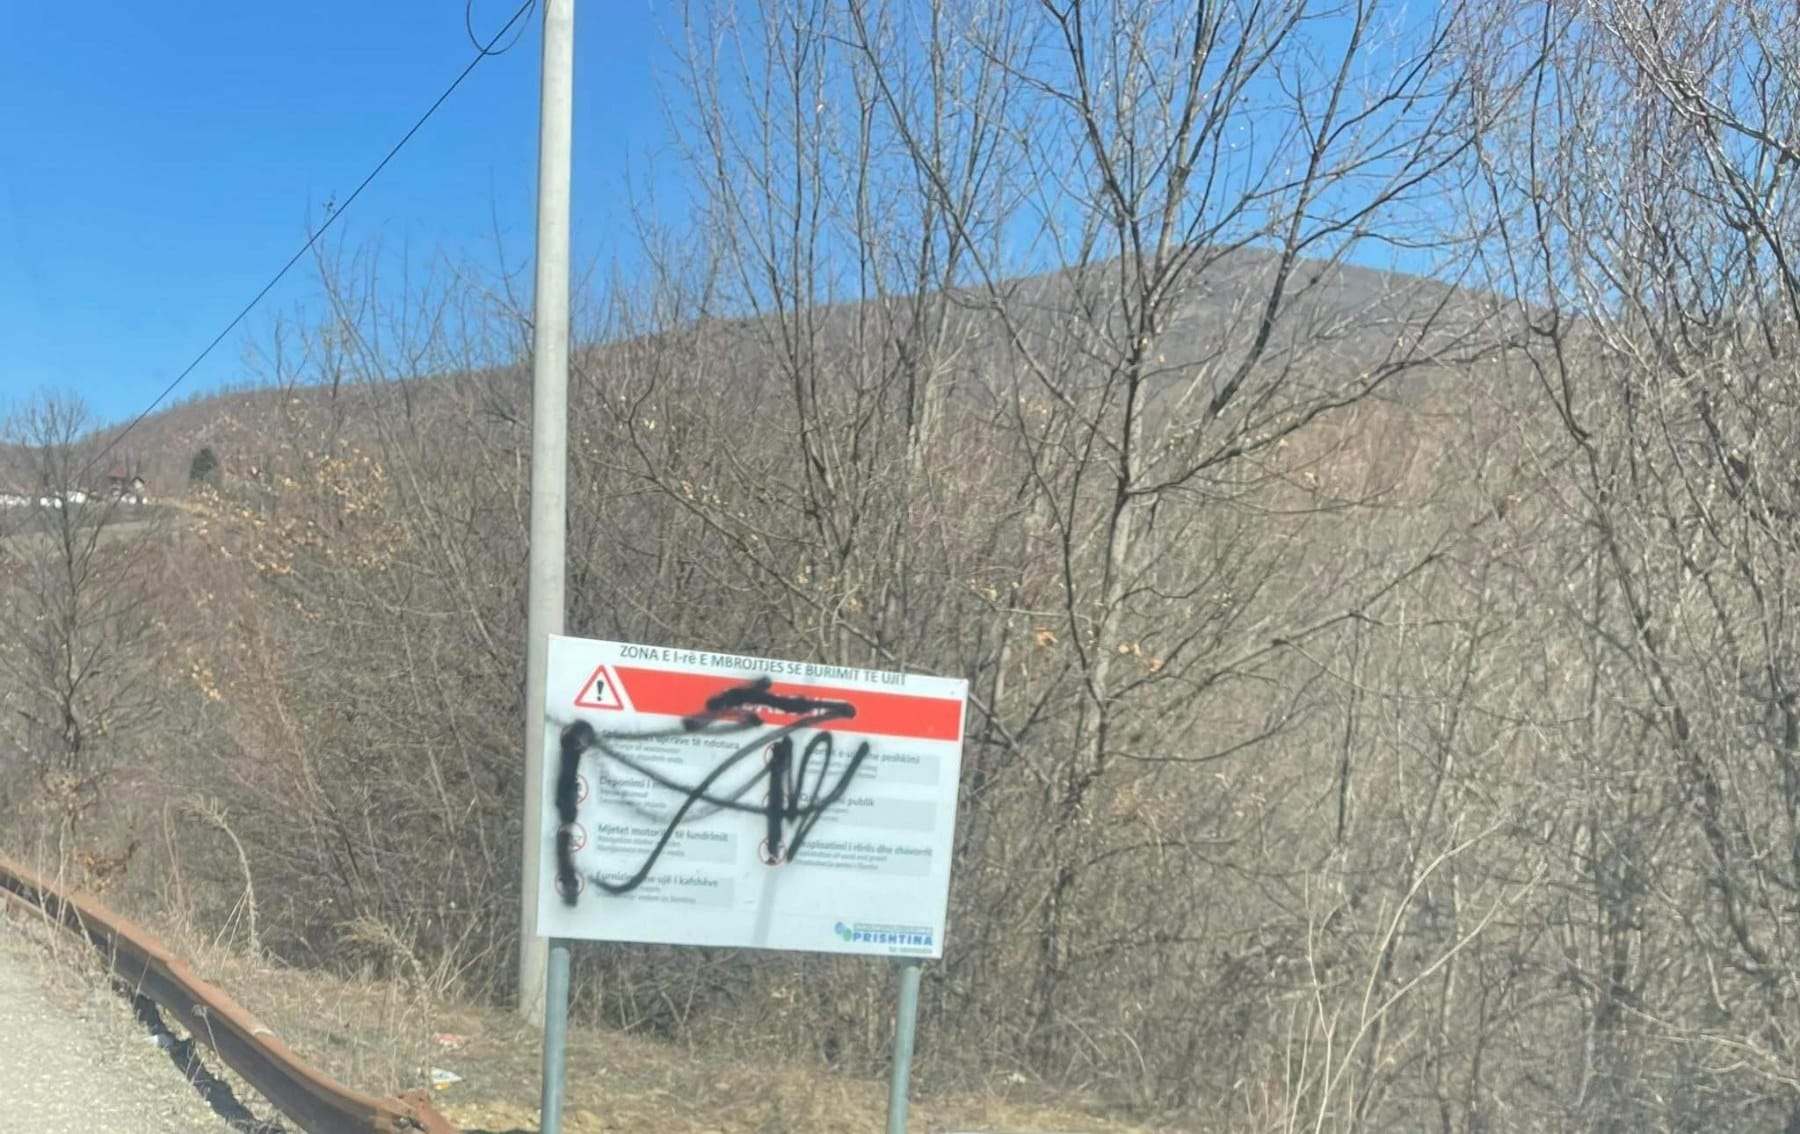  Skandaloze: KRU “Prishtina” fajëson banorët e Orllanit për dëmtim të shenjave sinjalizuese, më vonë ndryshojnë postimin